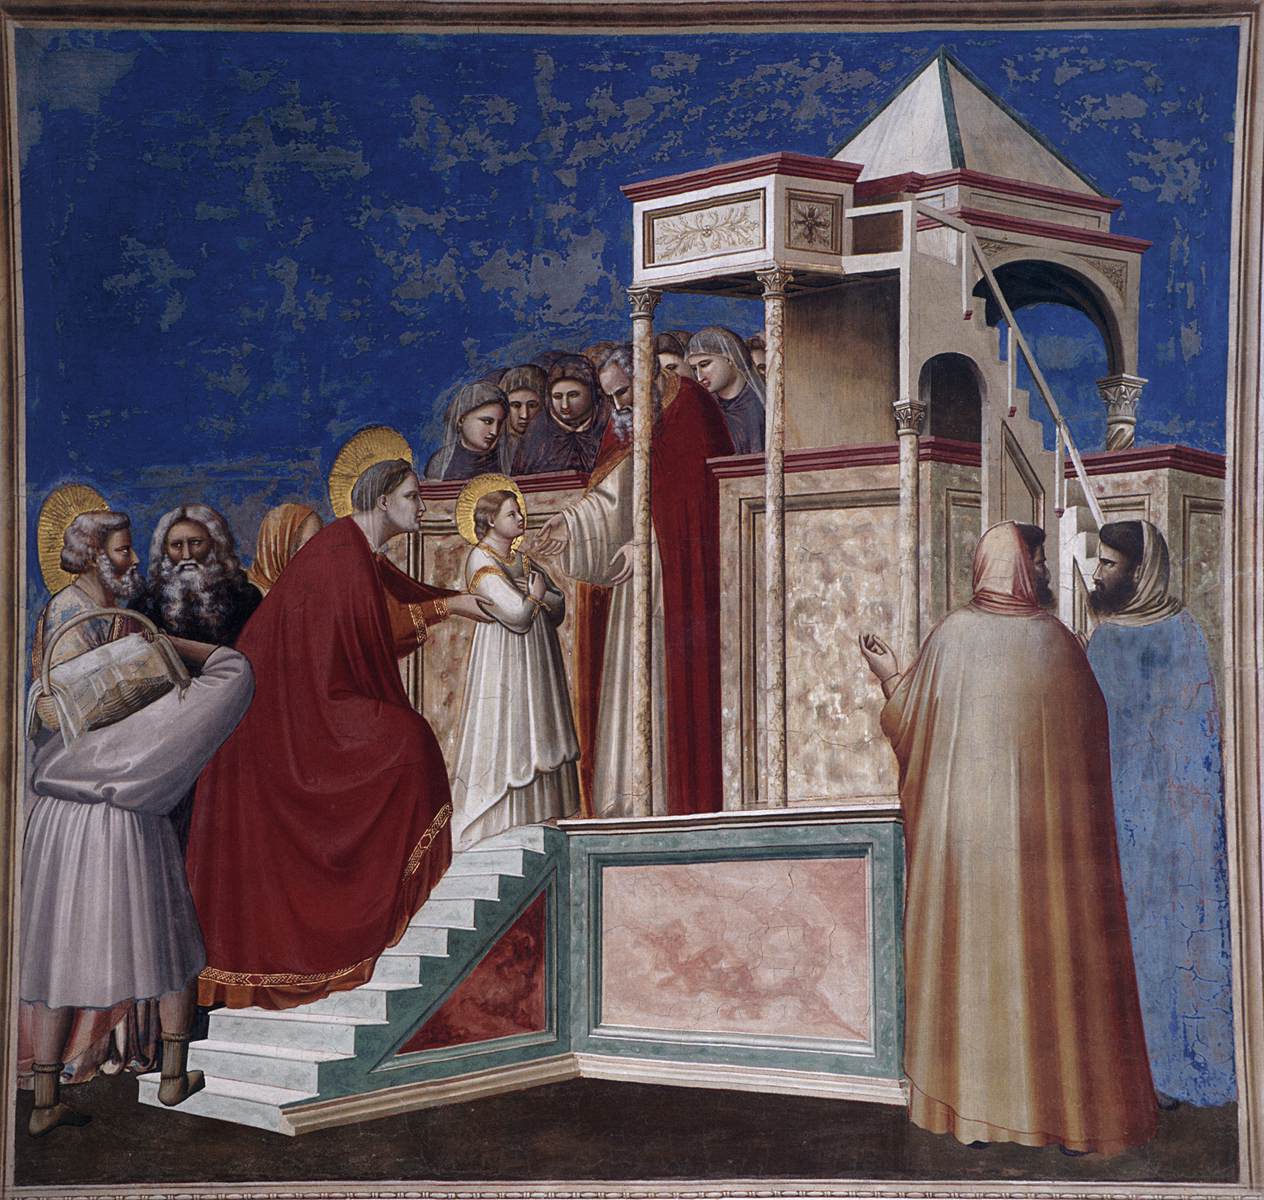 Giotto, Presentation of the Virgin in the Temple (1304-1306; fresco; Padua, Scrovegni Chapel)